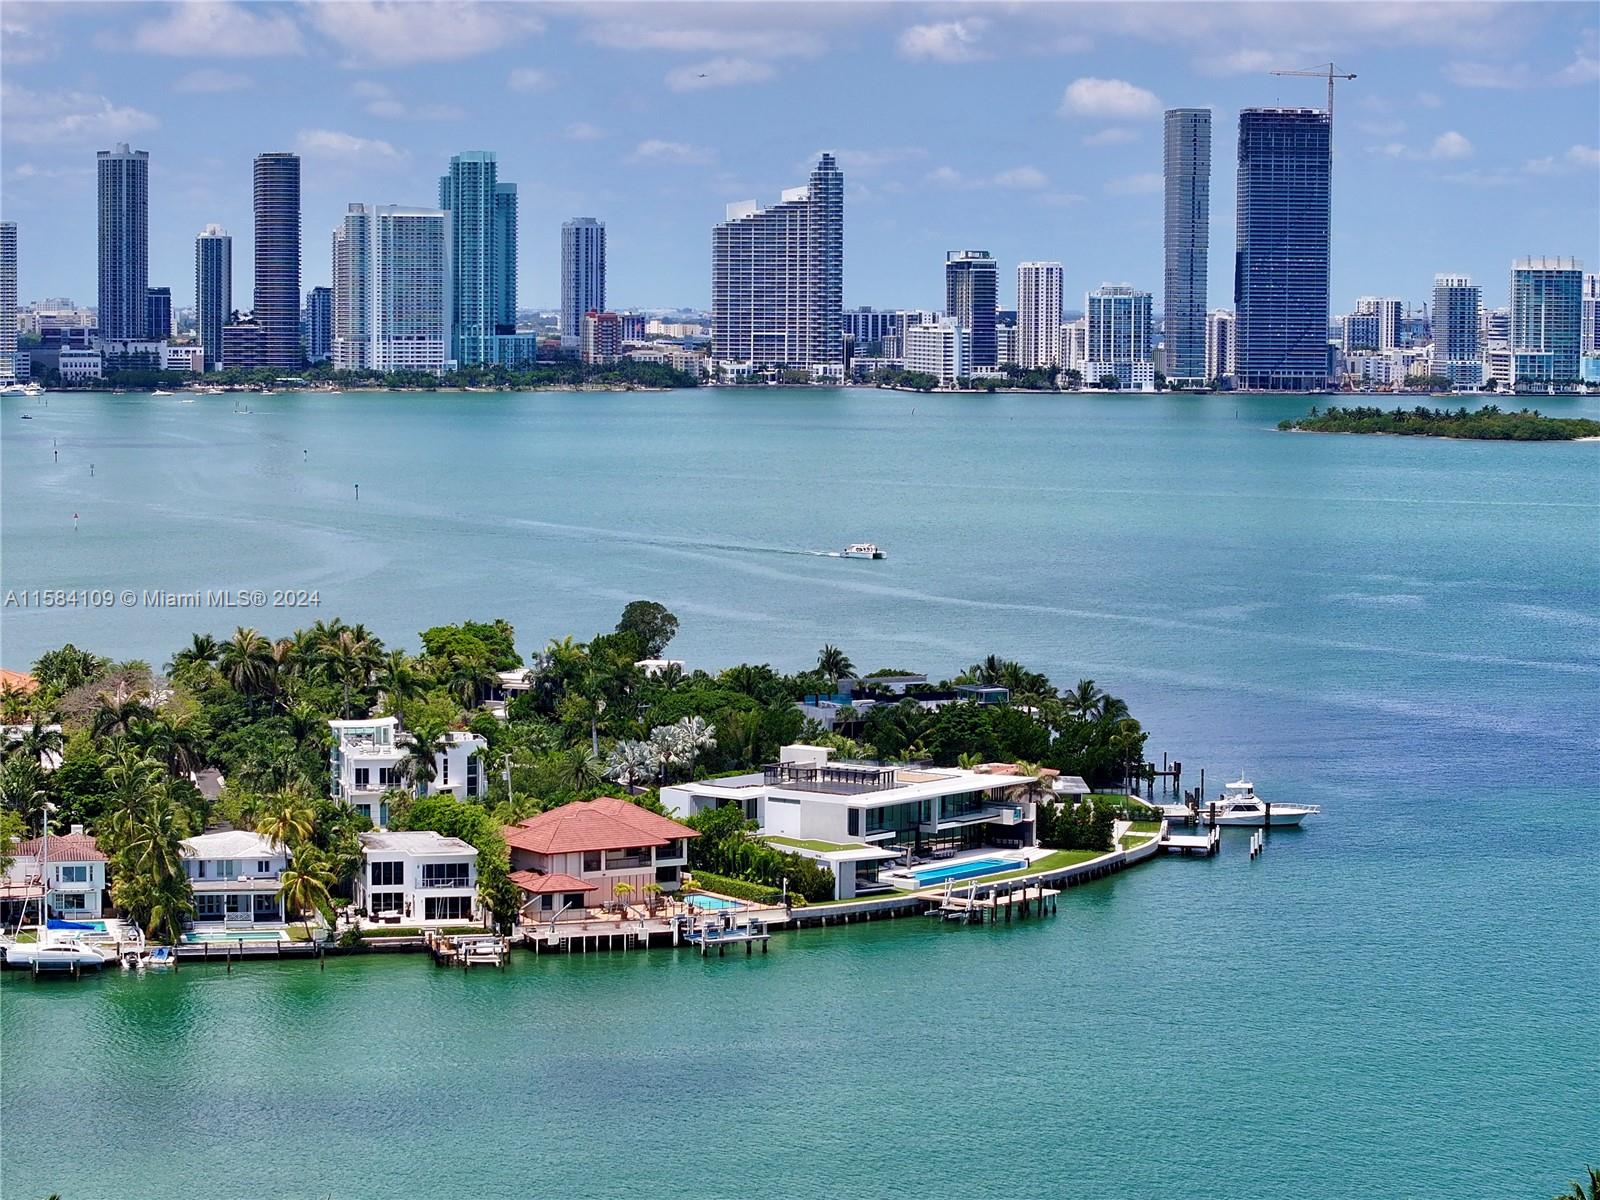 Property for Sale at 409 E San Marino Dr, Miami Beach, Miami-Dade County, Florida - Bedrooms: 6 
Bathrooms: 6  - $14,950,000